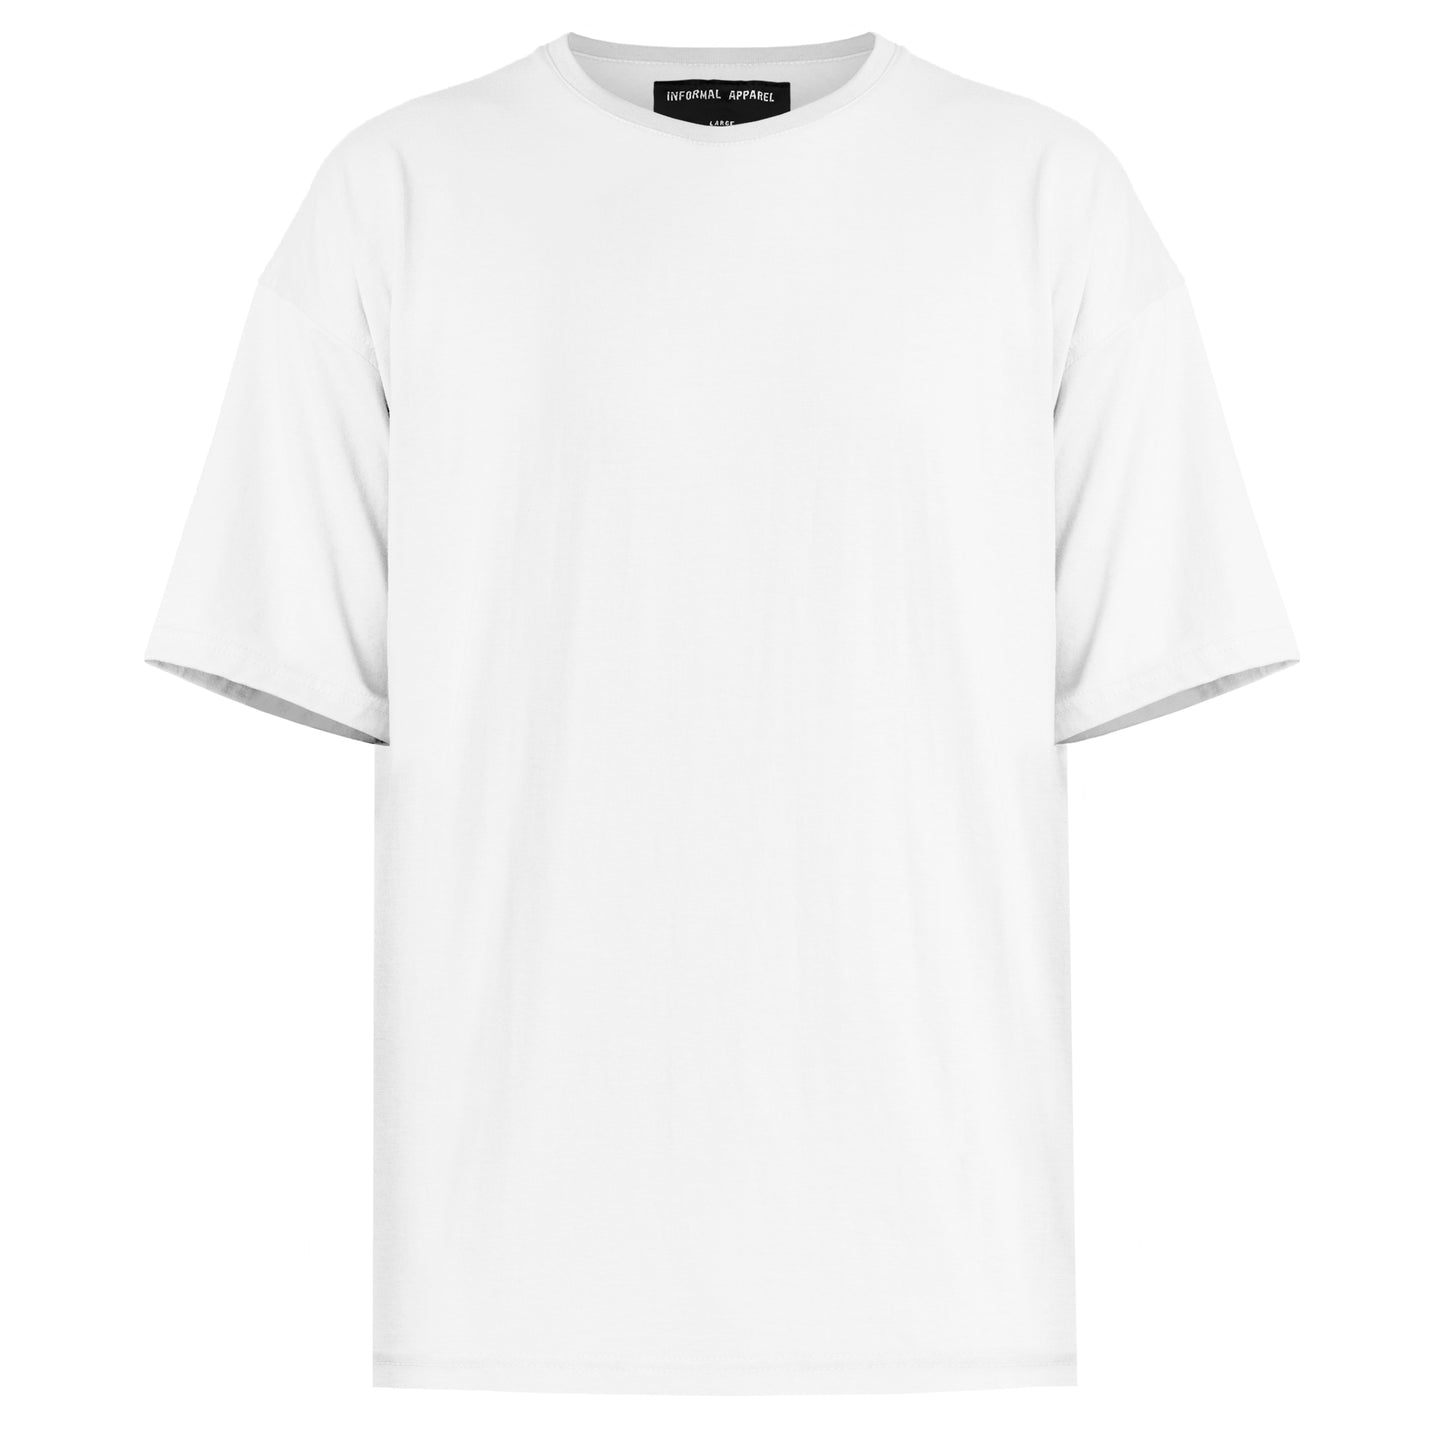 Spine T-shirt : White